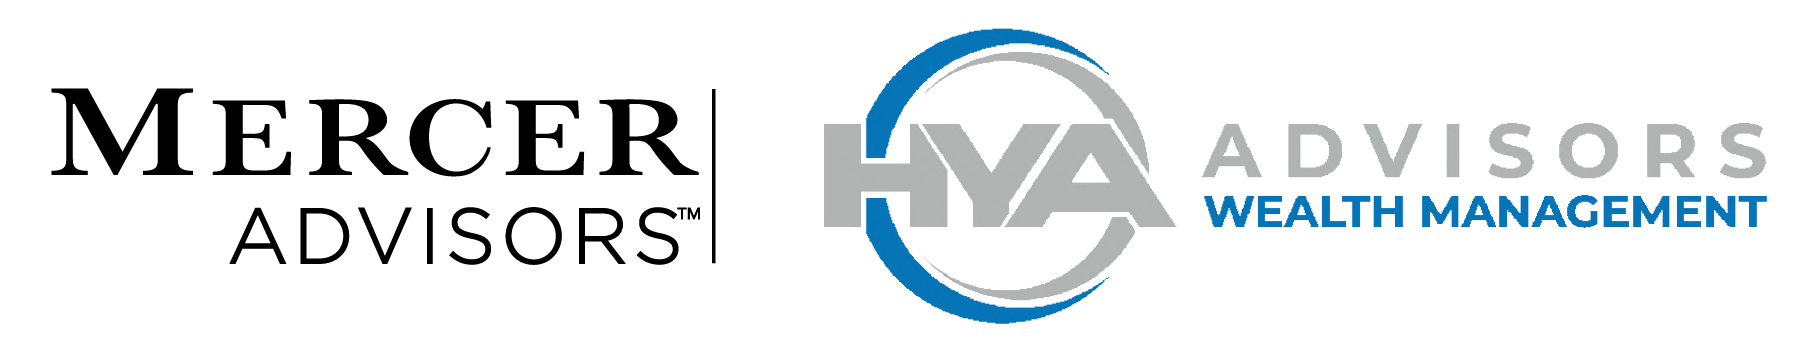 Mercer HYA Advisors Logo